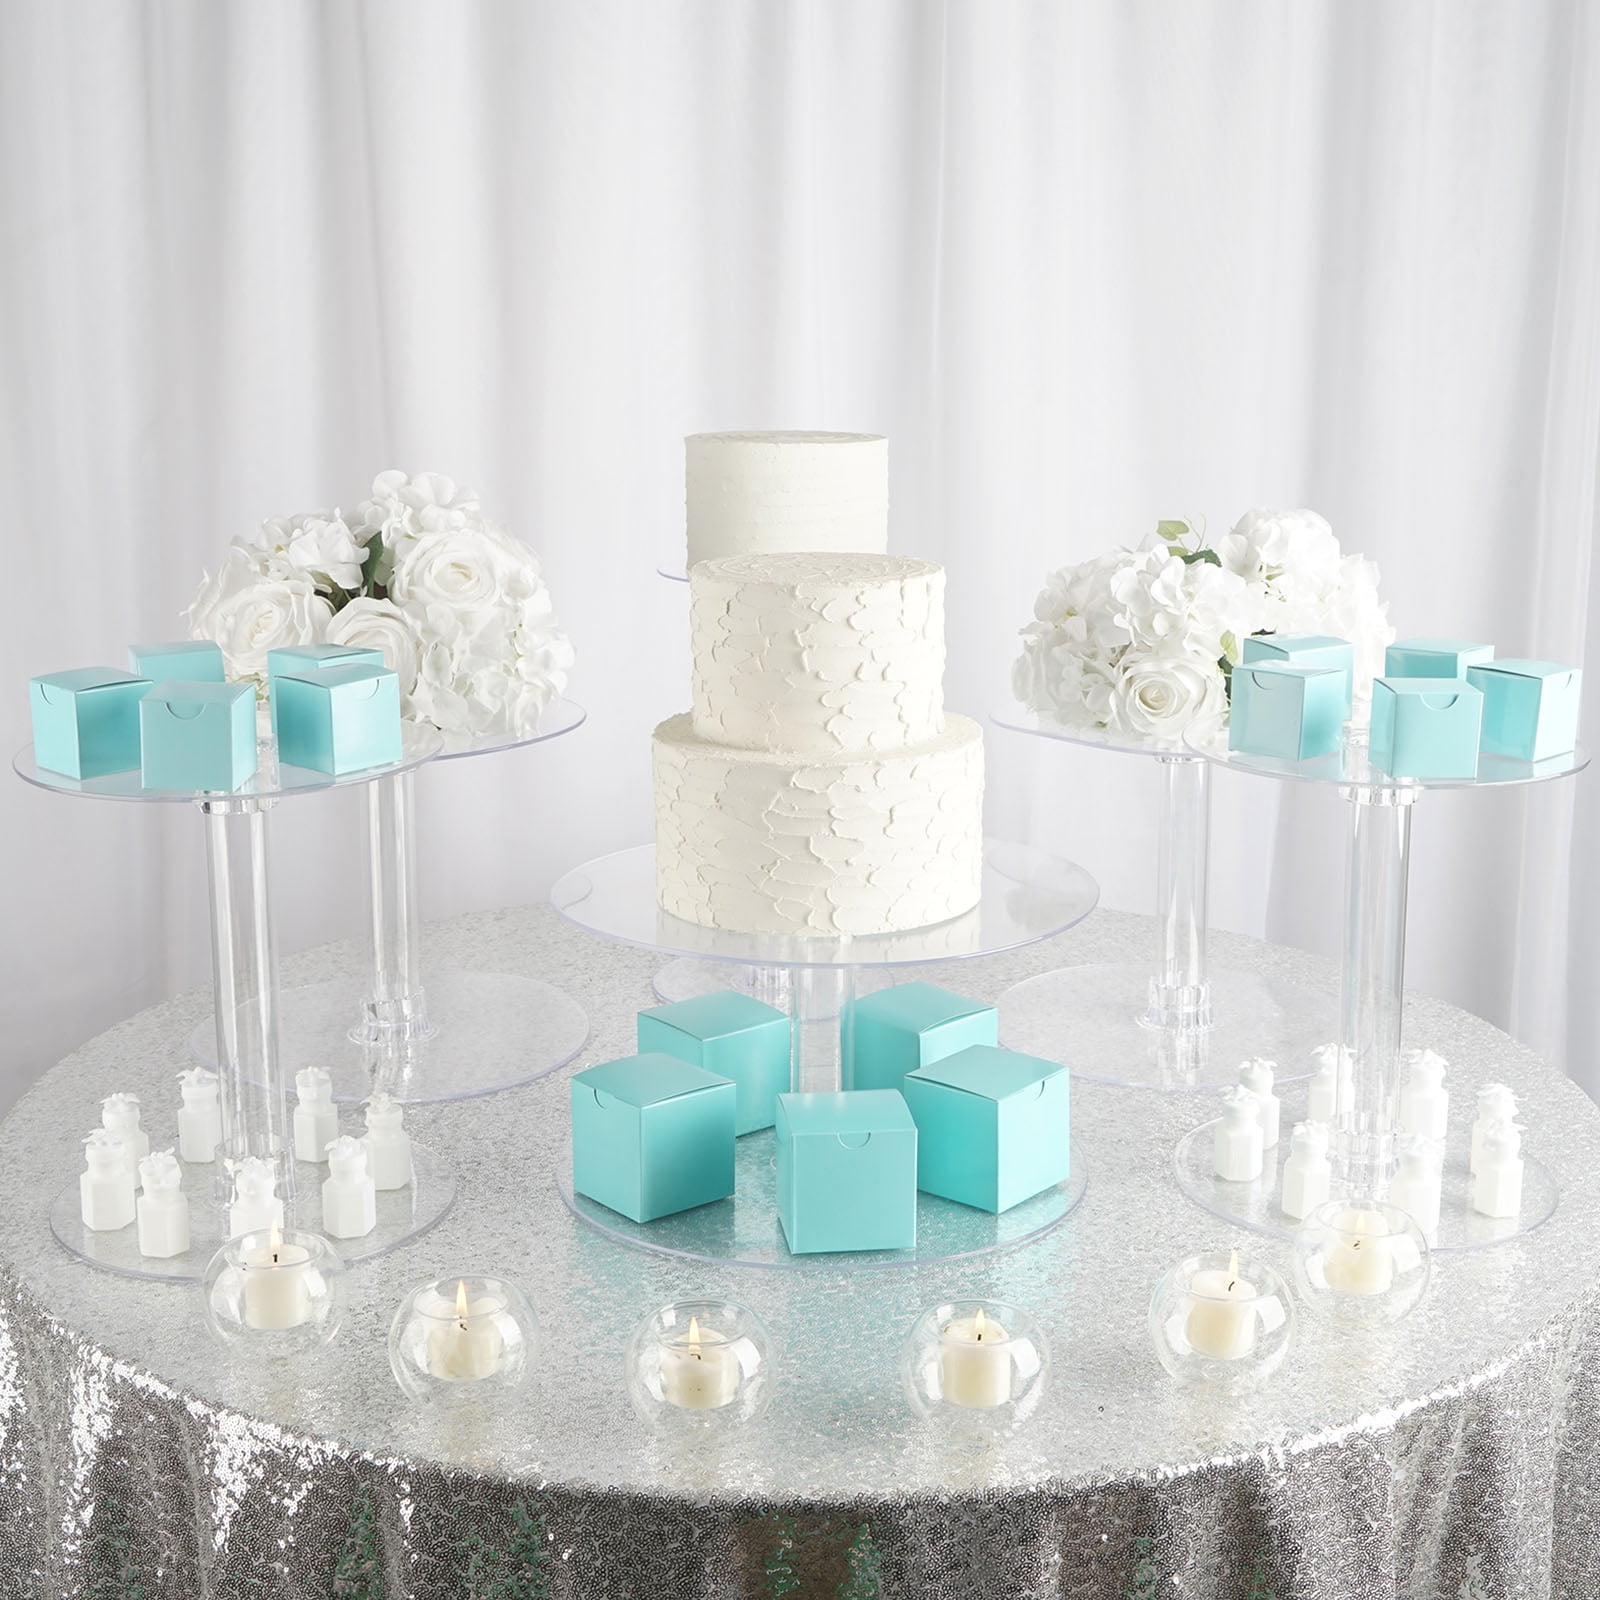 LED Light Wedding Dessert Pedestal Display 3 Piece LED CAKE STAND Set